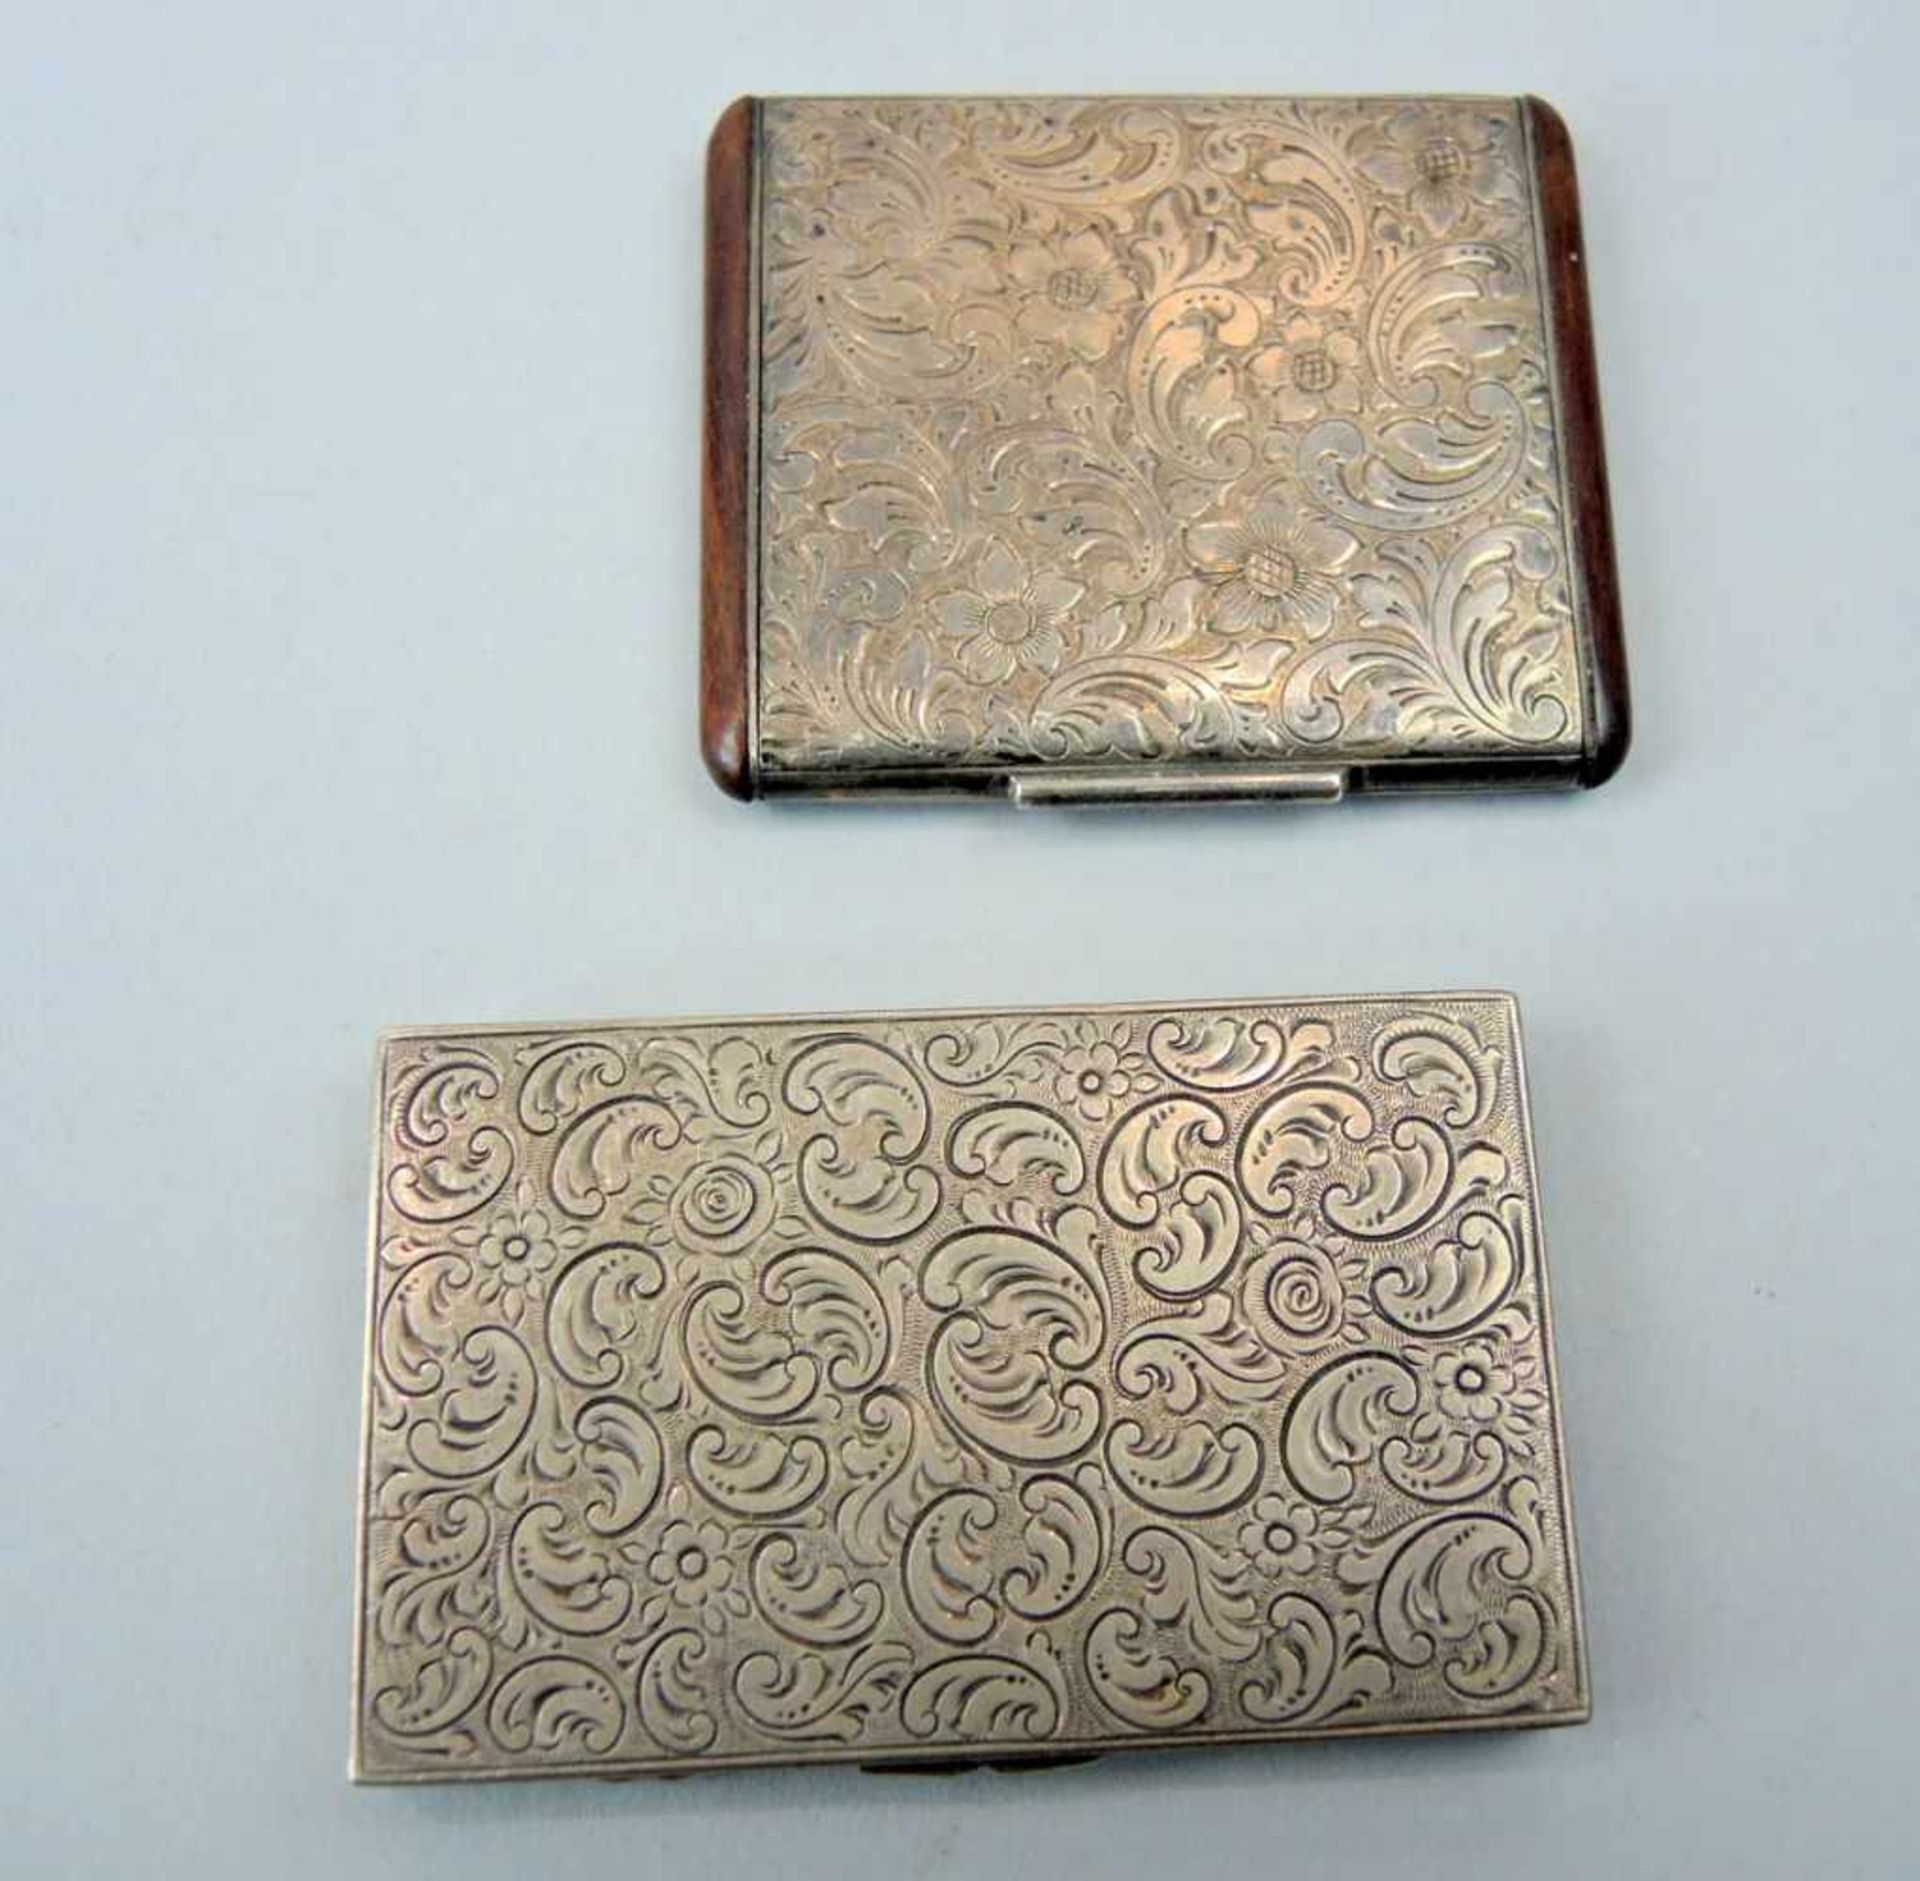 Paar kleine Silberetuis Set bestehend aus 2 Etuis: 1 Puderdose mit Spiegel, Silber 935 mit Holz-